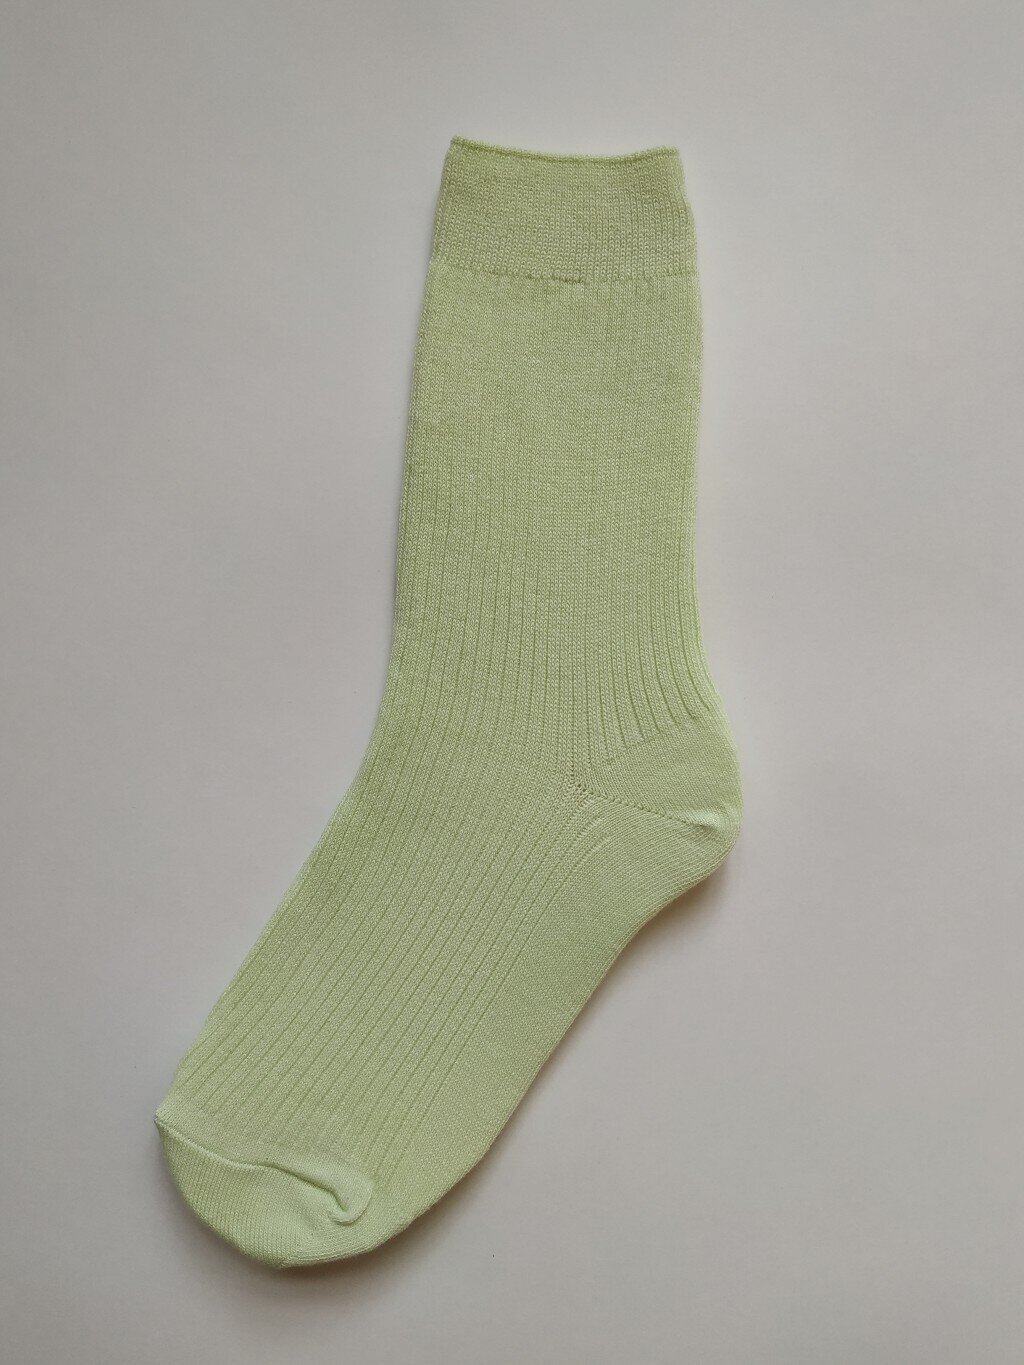 Носки из хлопка яблочого цвета